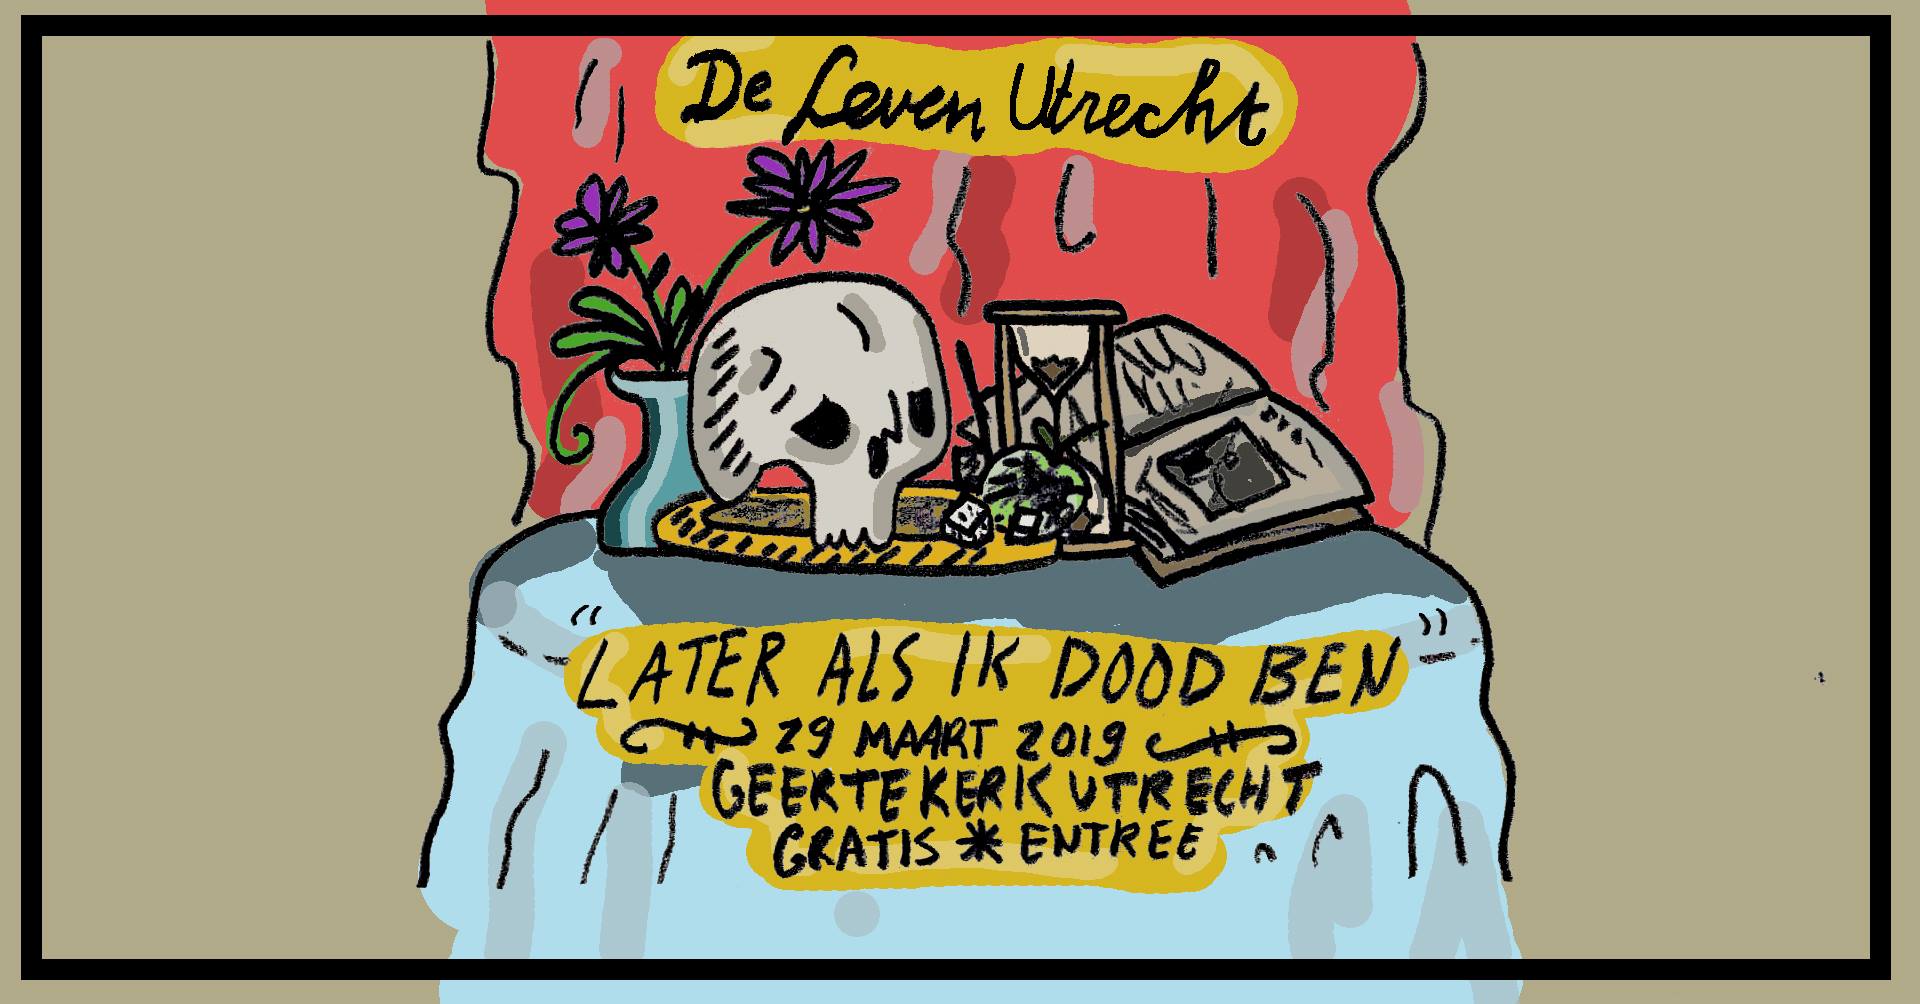 De Leven Utrecht ‘Later als ik dood ben’